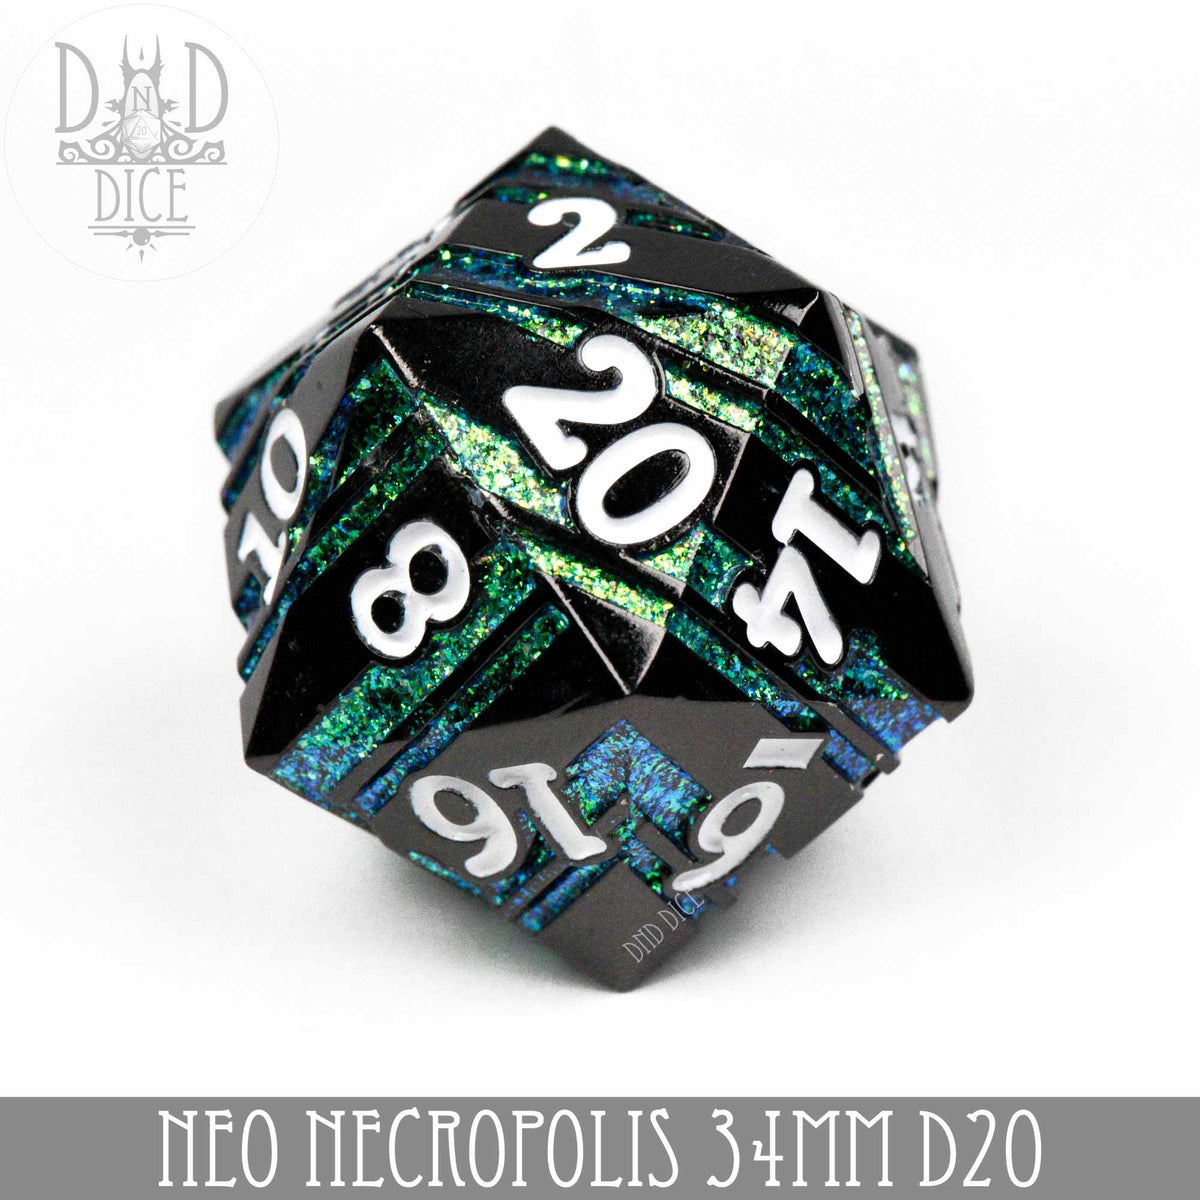 Neo Necropolis 34mm D20 [Metal]